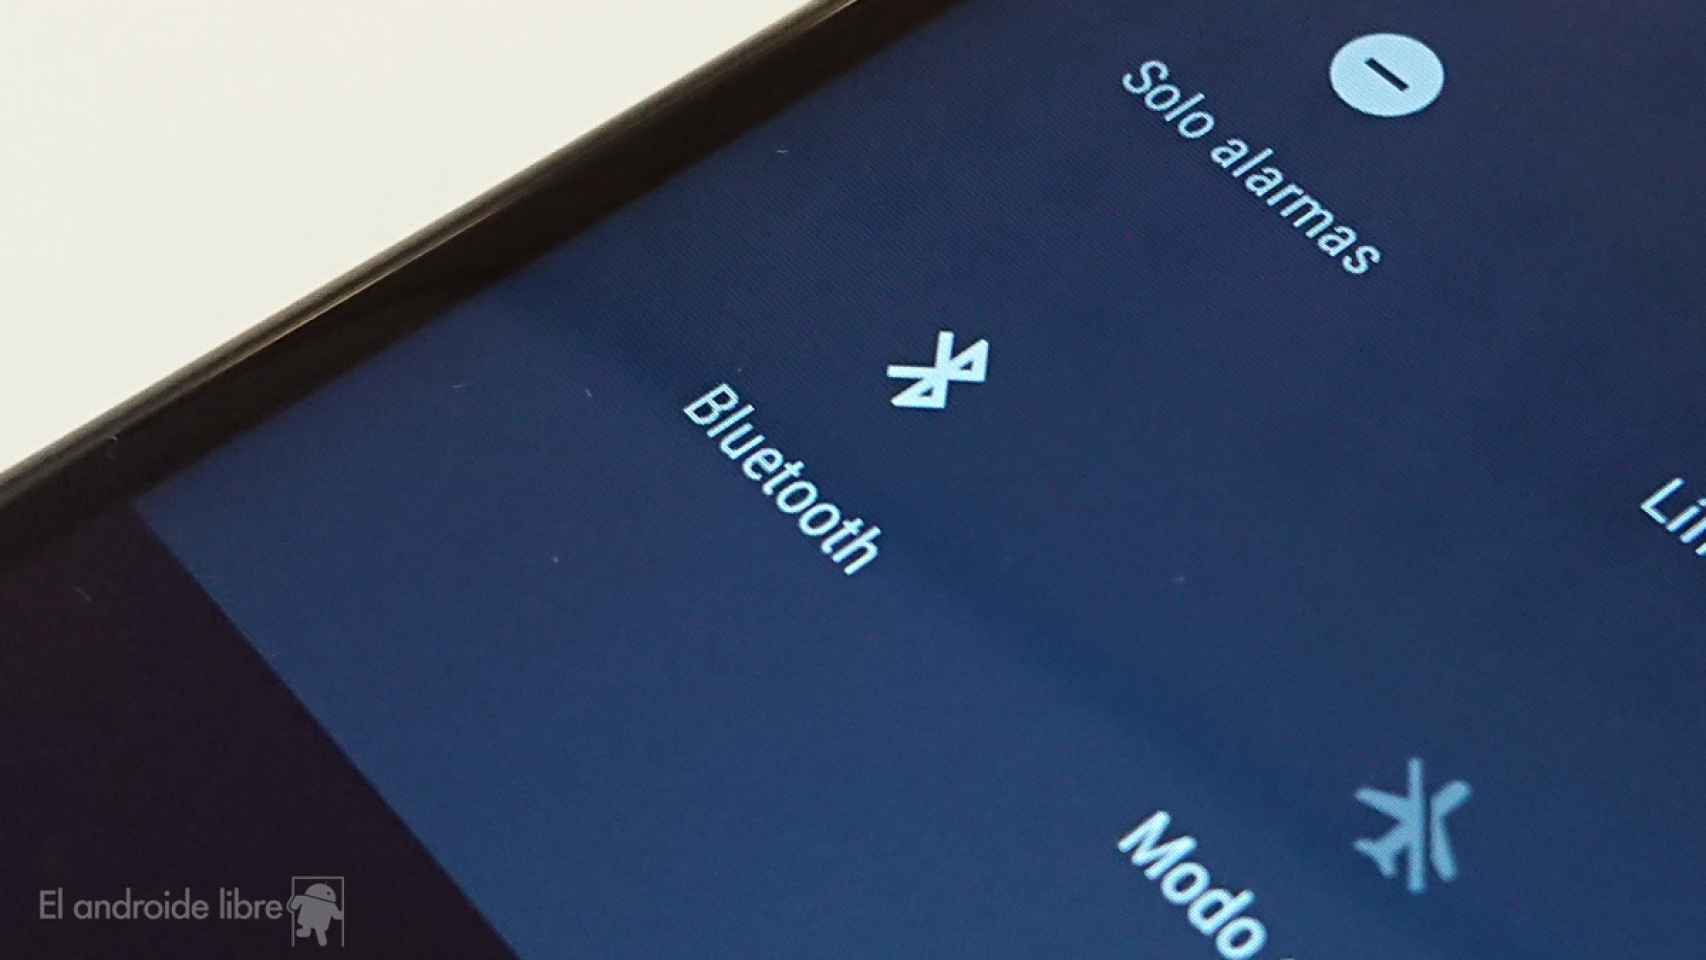 El Bluetooth no funciona en mi móvil: qué puedo hacer